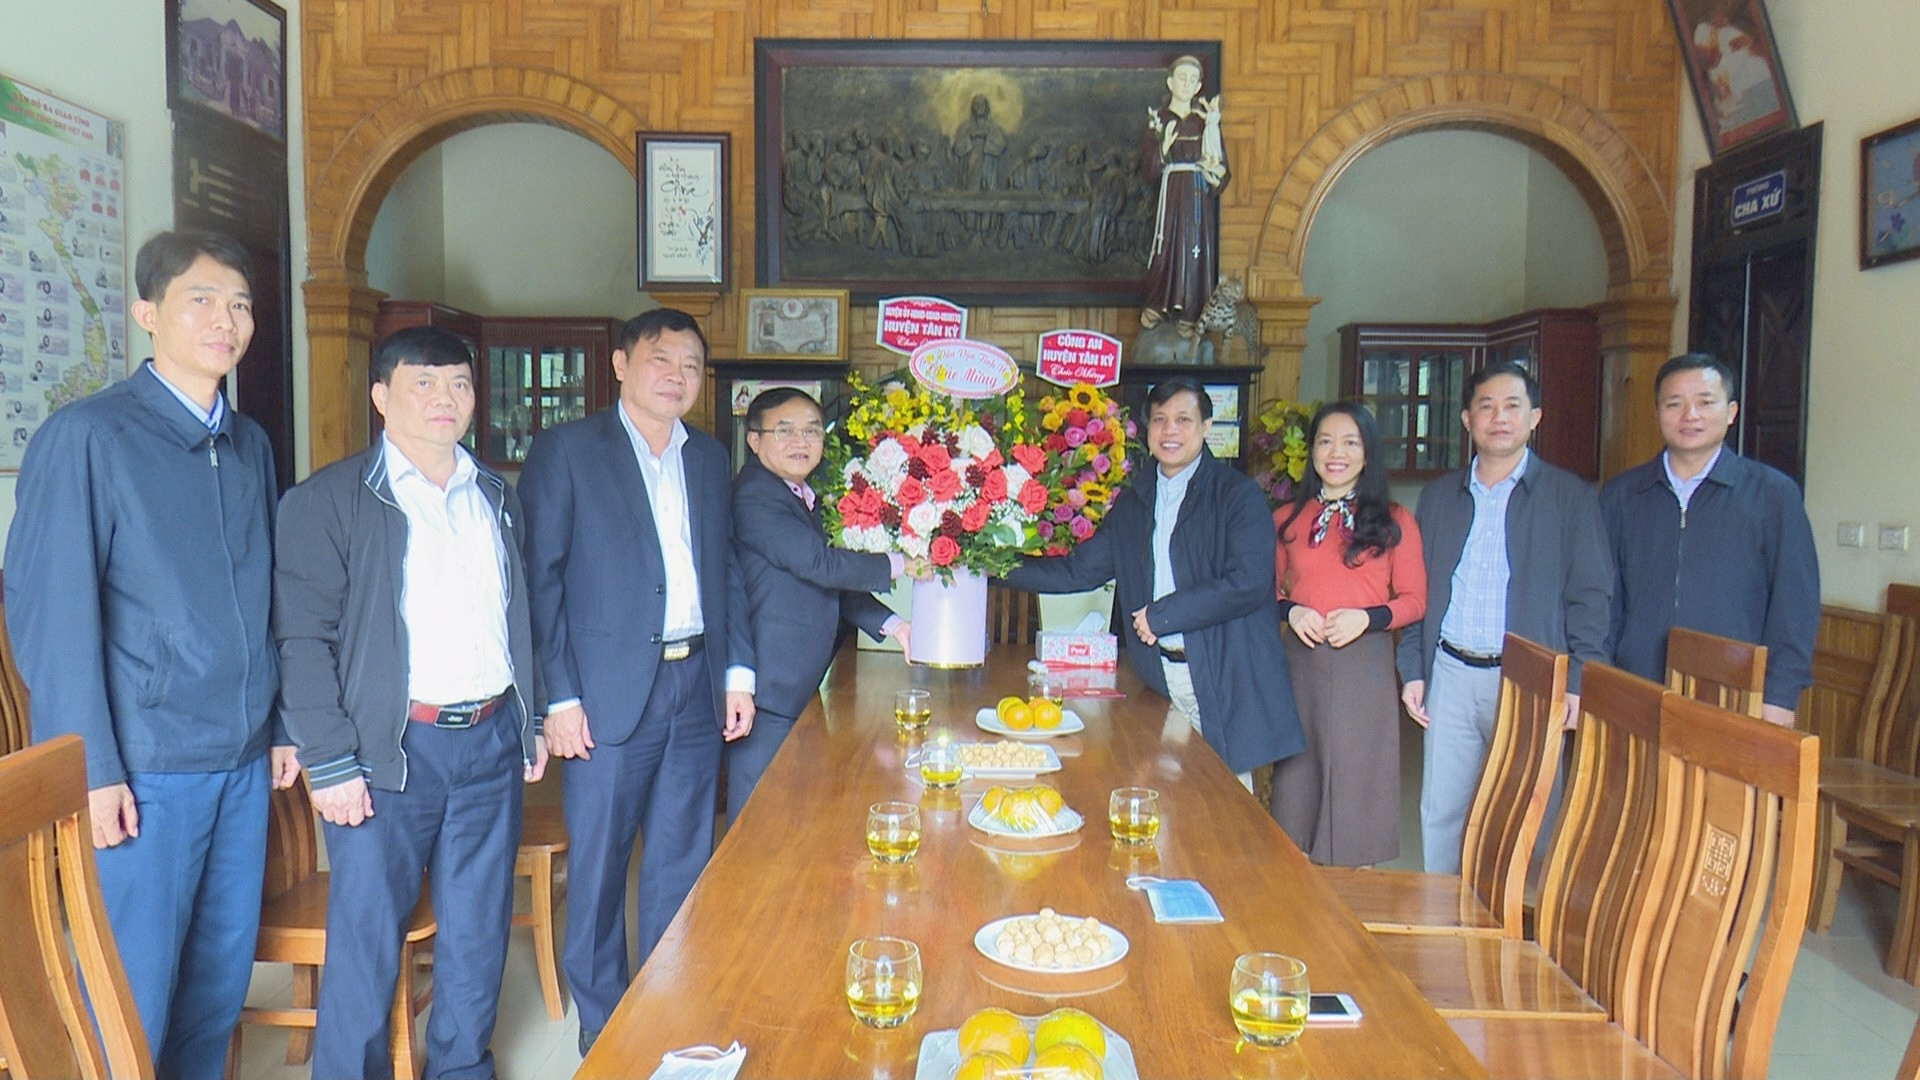  Trưởng Ban Dân vận Tỉnh ủy và lãnh đạo huyện Tân kỳ tặng hoa chúc mừng linh mục giáo xứ Làng Rào